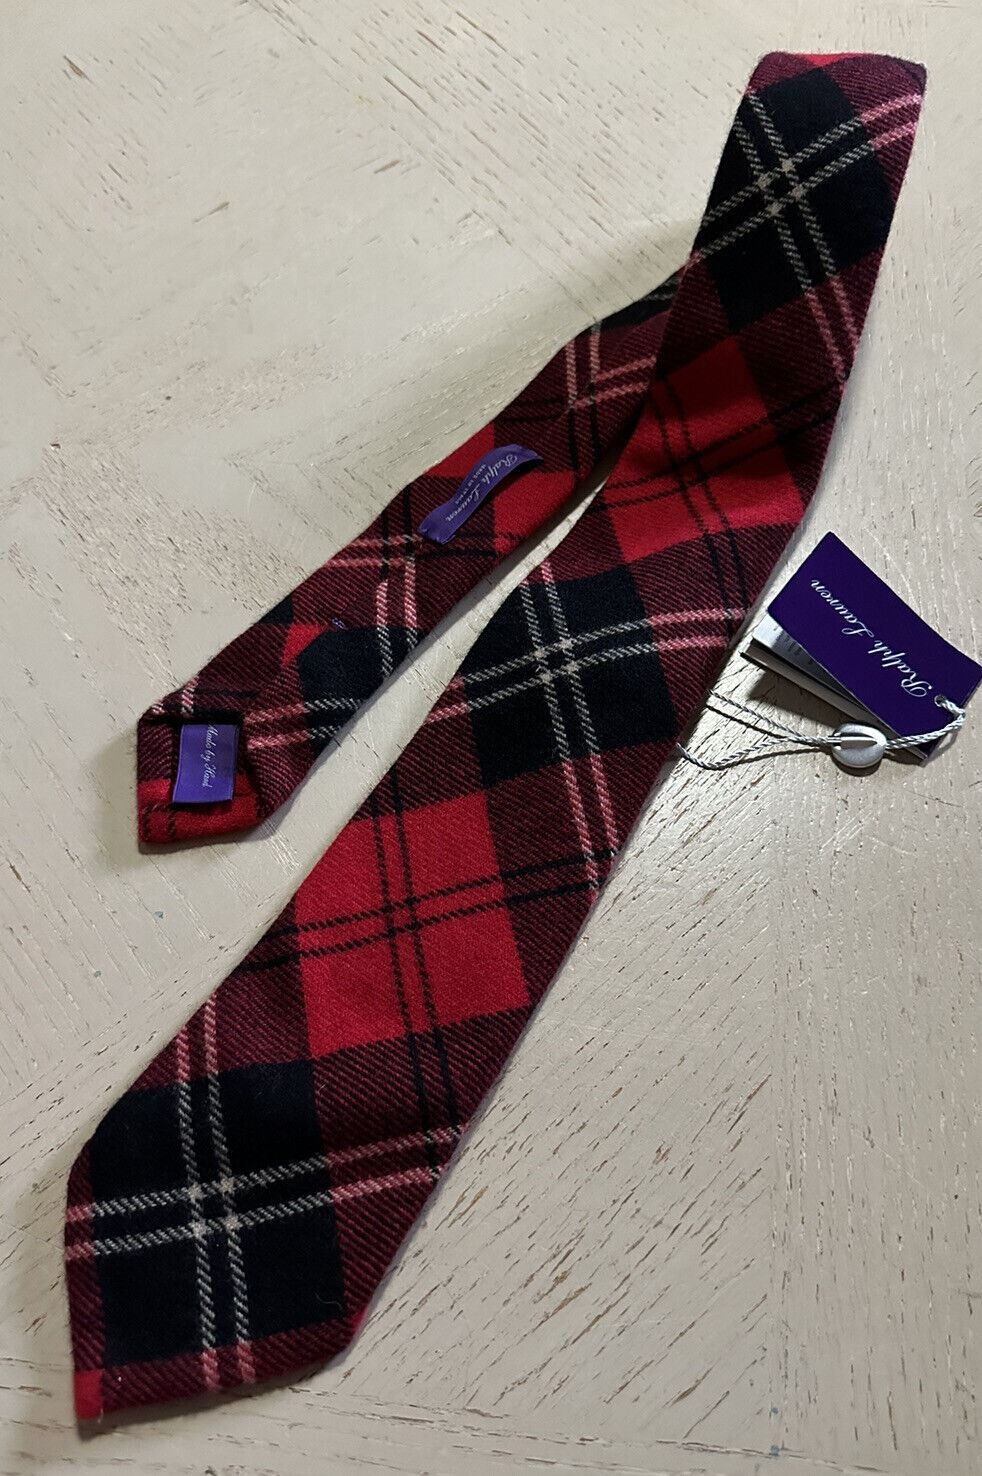 Новый красный галстук с кашемировым воротником Ralph Lauren Purple Label за 265 долларов, сделанный вручную в Италии